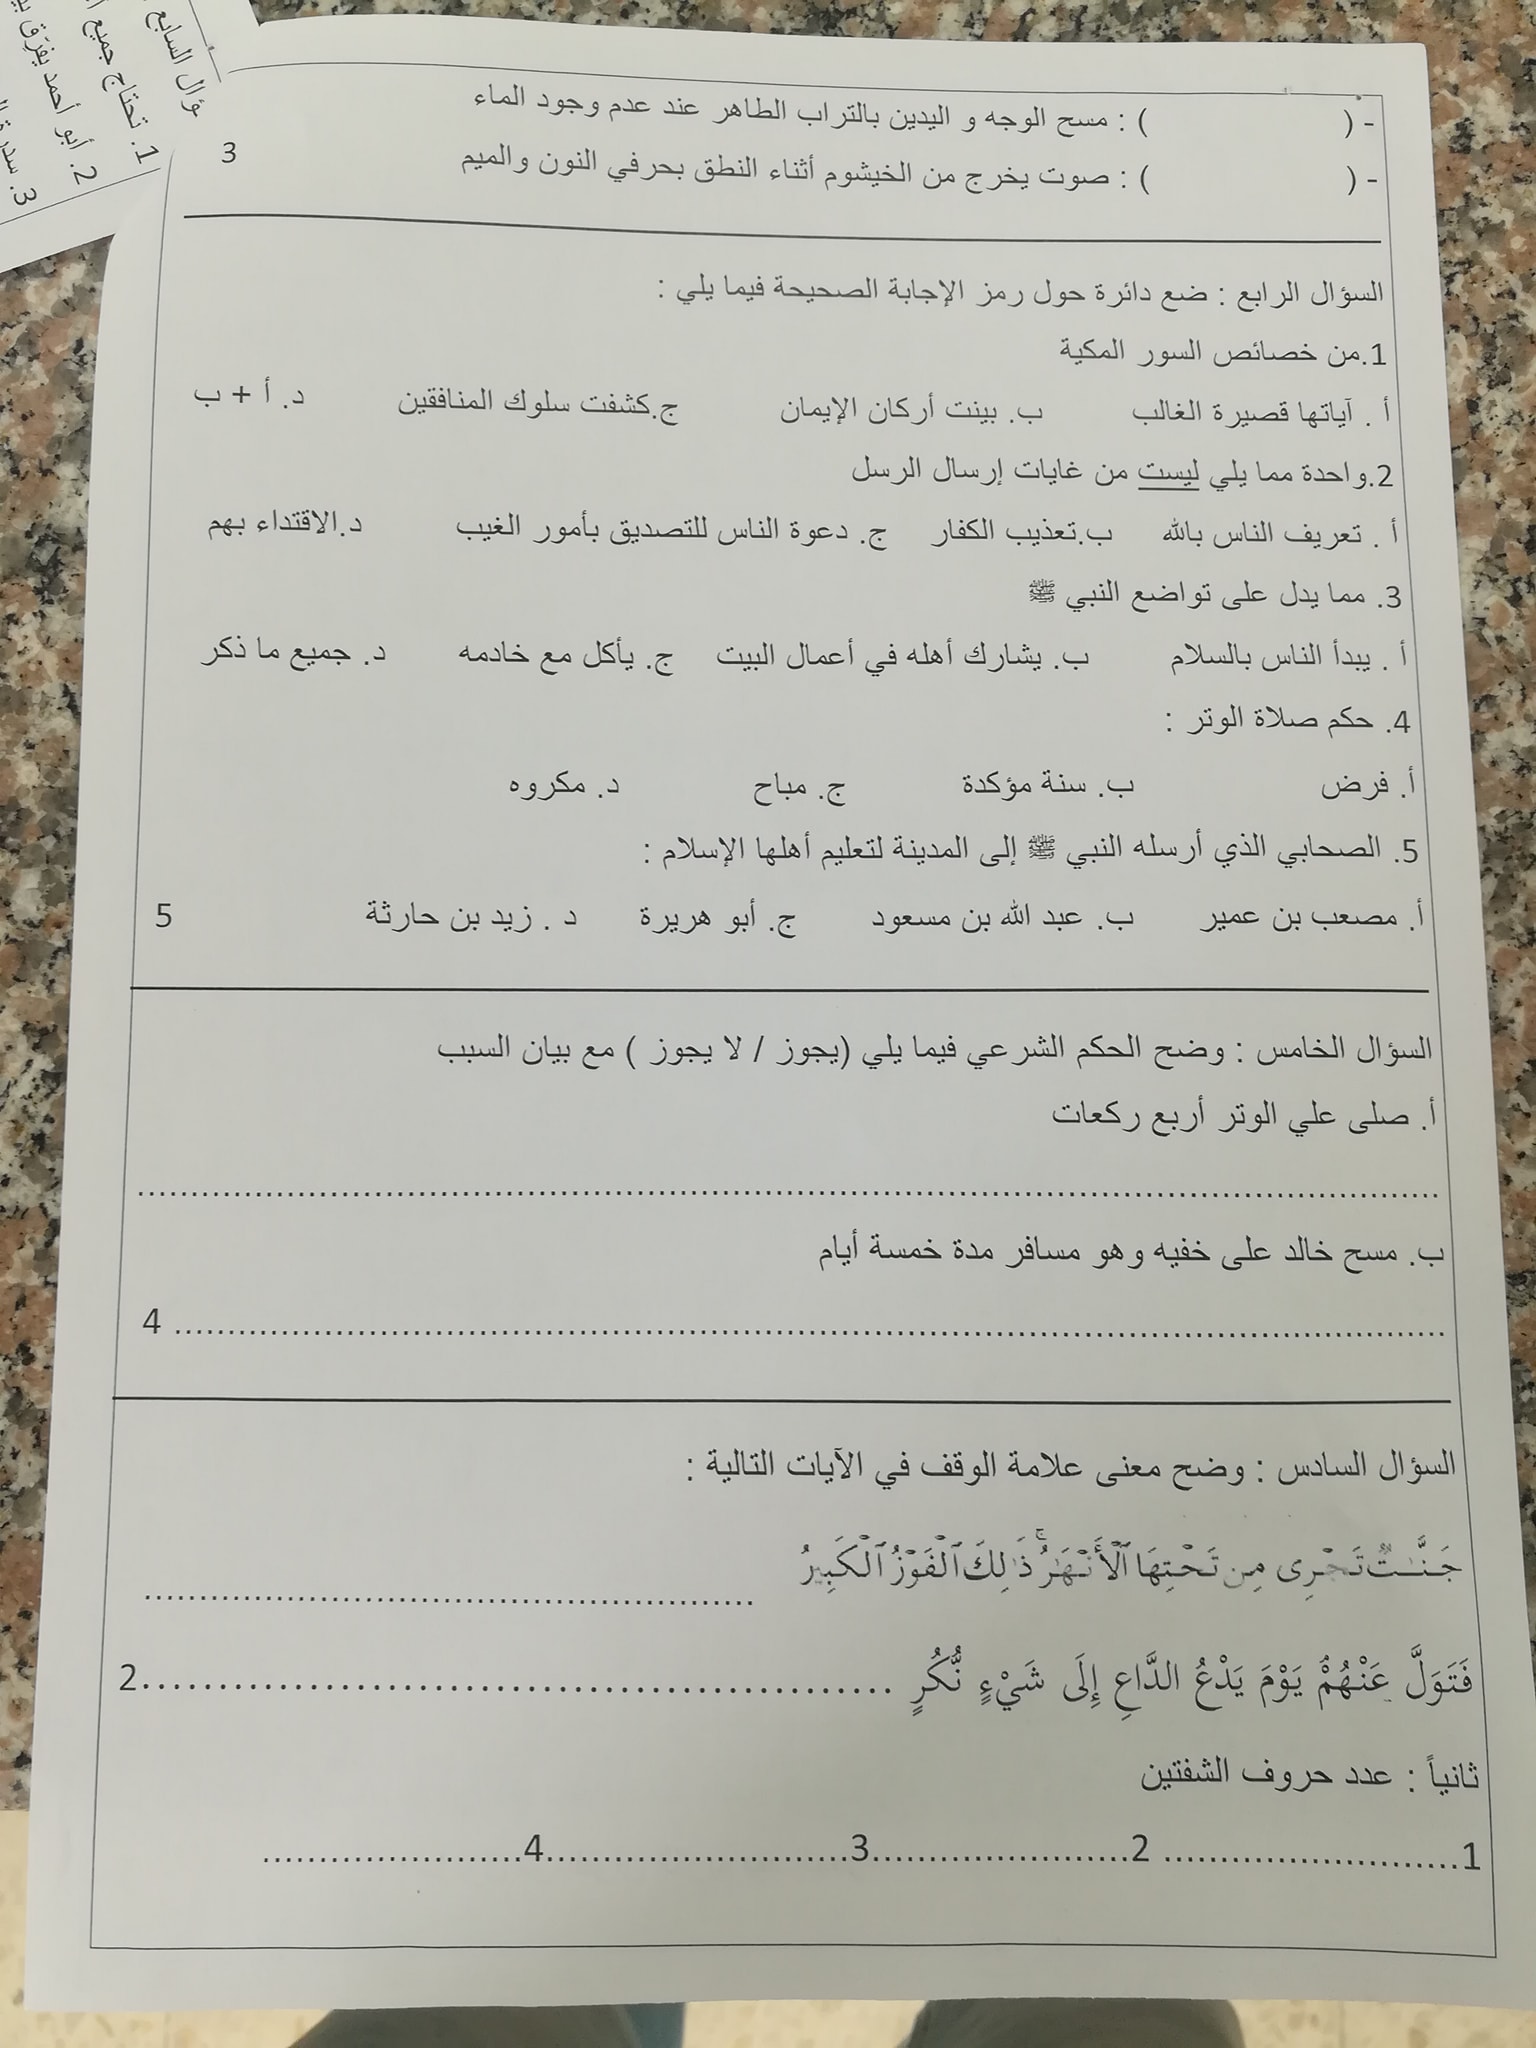 2 صور امتحان نهائي لمادة التربية الاسلامية للصف الخامس الفصل الاول 2021.jpg